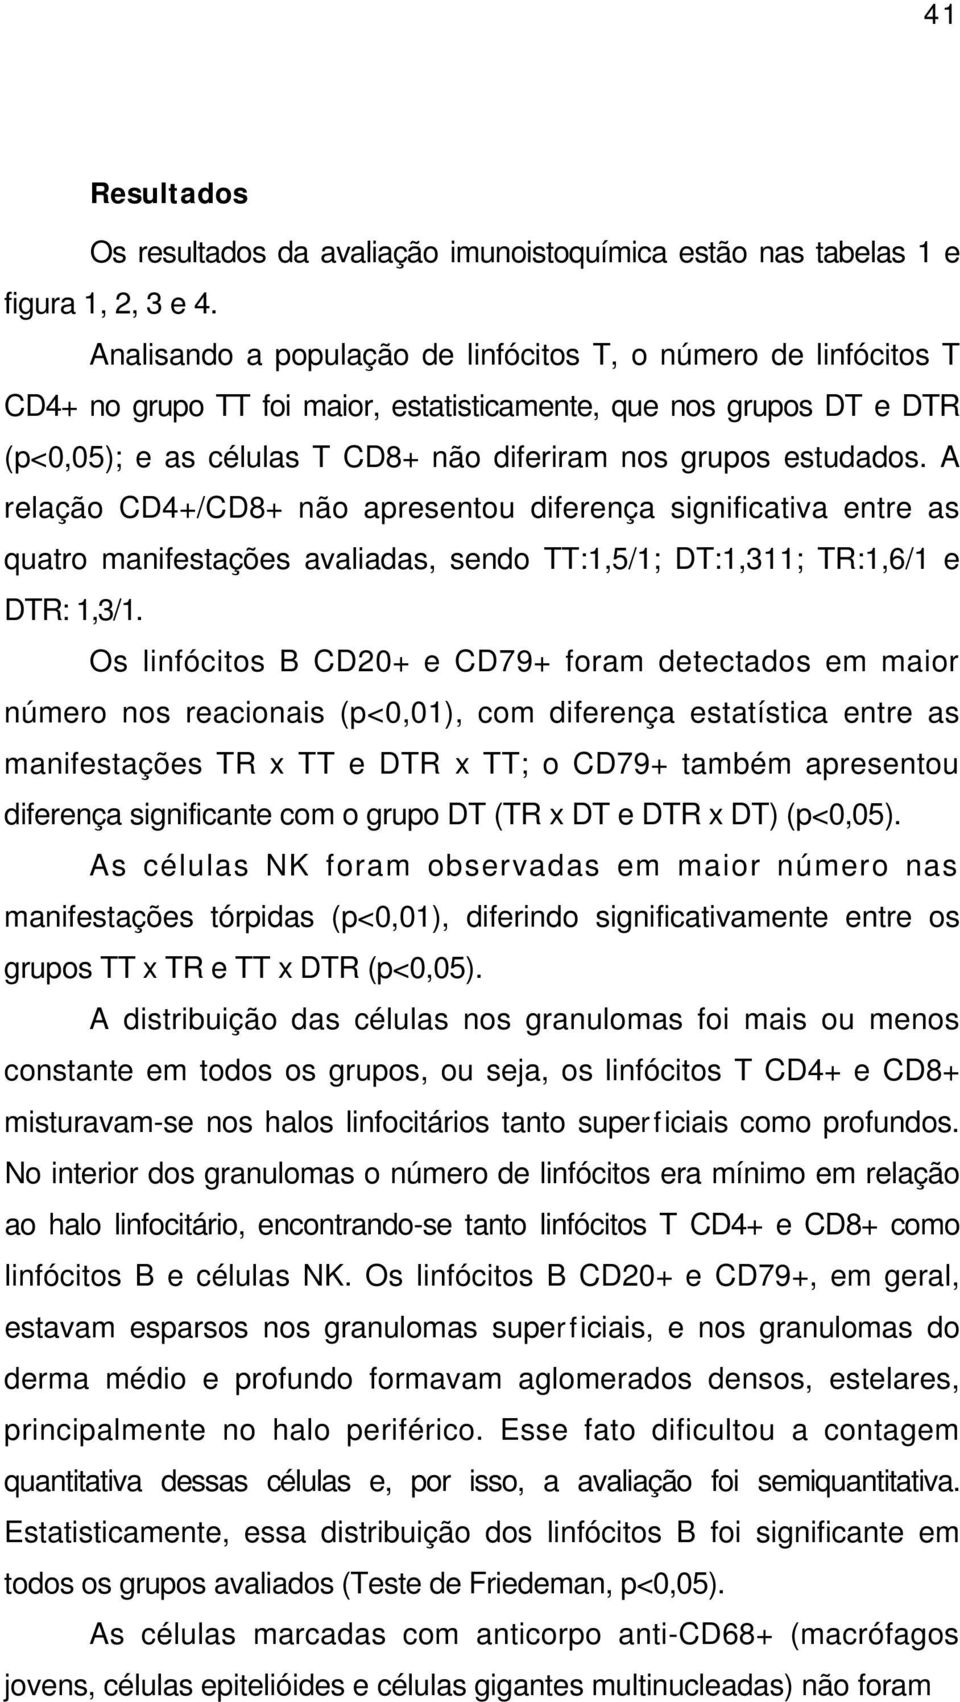 A relação CD4+/CD8+ não apresentou diferença significativa entre as quatro manifestações avaliadas, sendo TT:1,5/1; DT:1,311; TR:1,6/1 e DTR: 1,3/1.